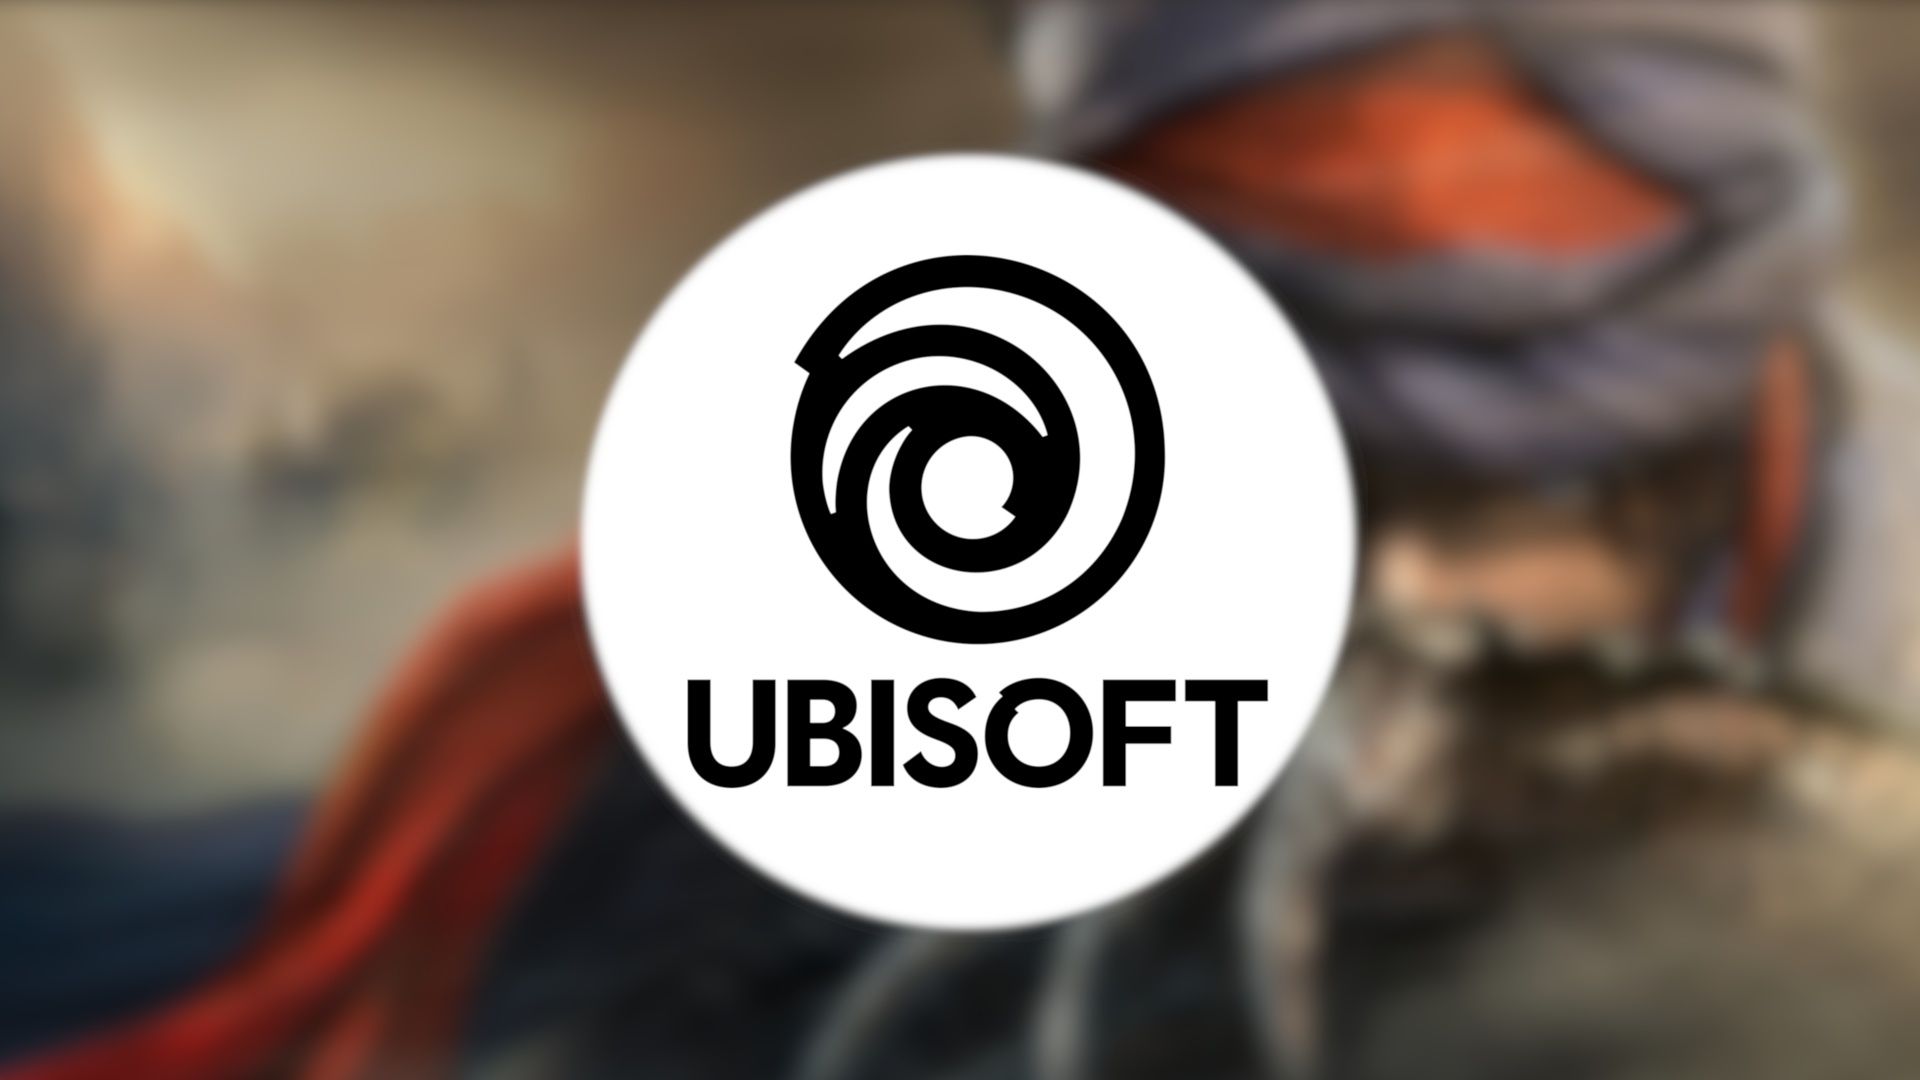 Game NFT khiến nhân viên mất lòng tin vào ban lãnh đạo Ubisoft, quan hệ ngày càng căng thẳng